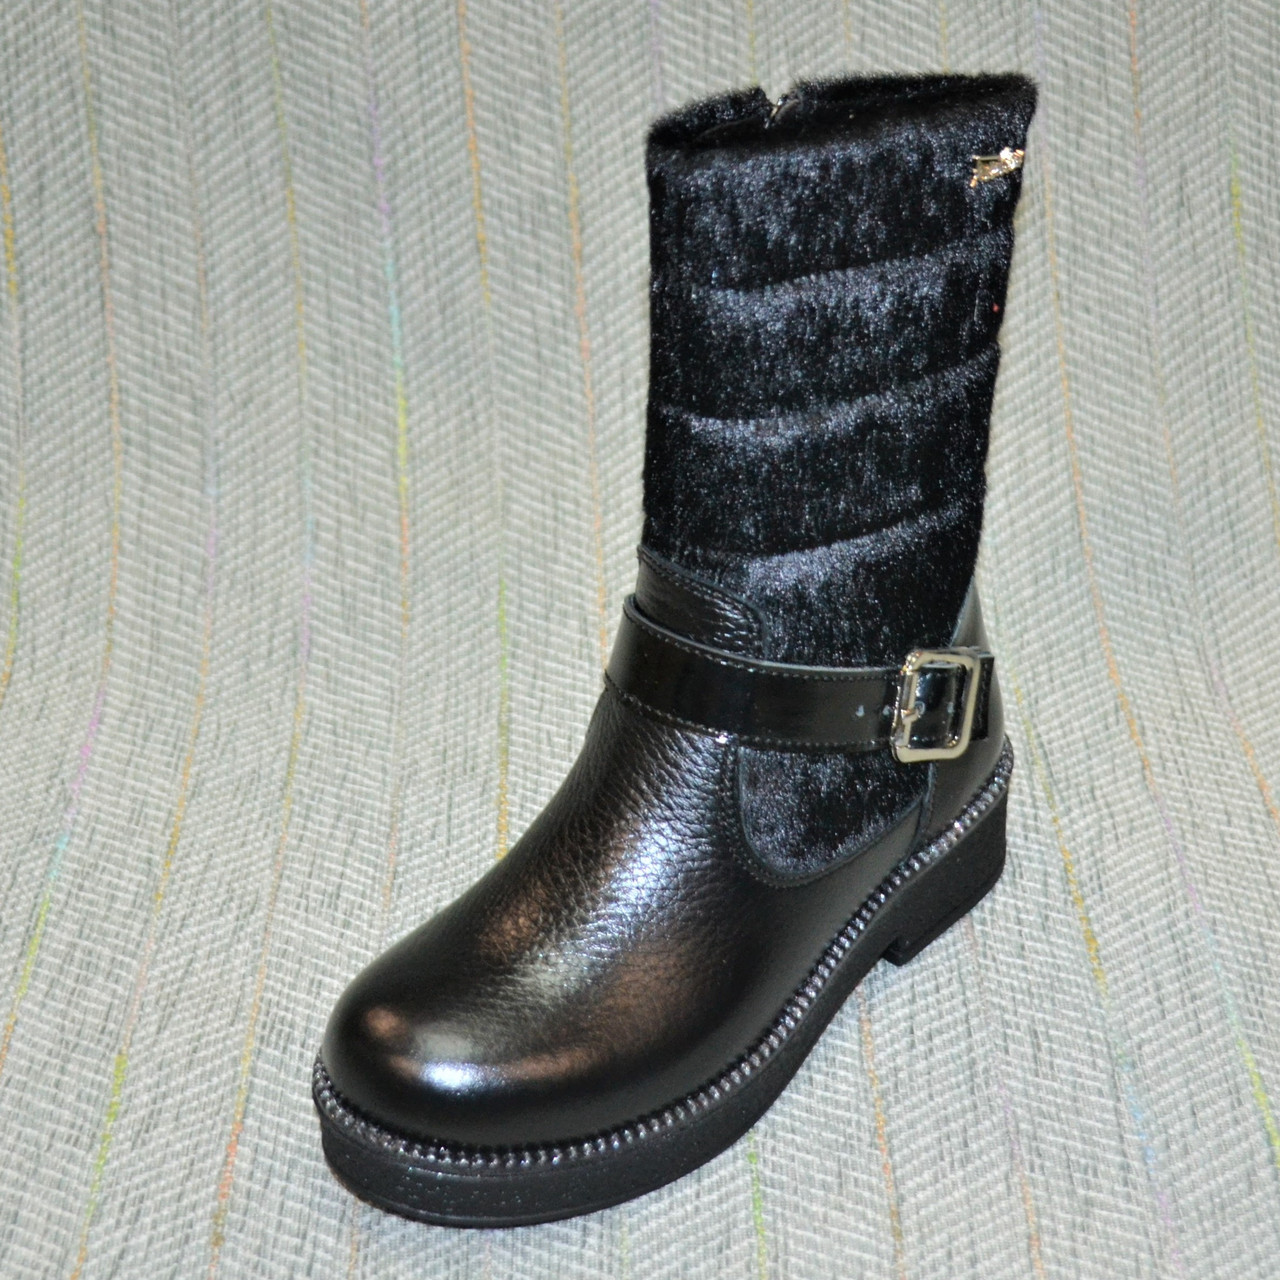 Зимові чобітки дівчинка, Tobi (код 0714) розміри: 31-33